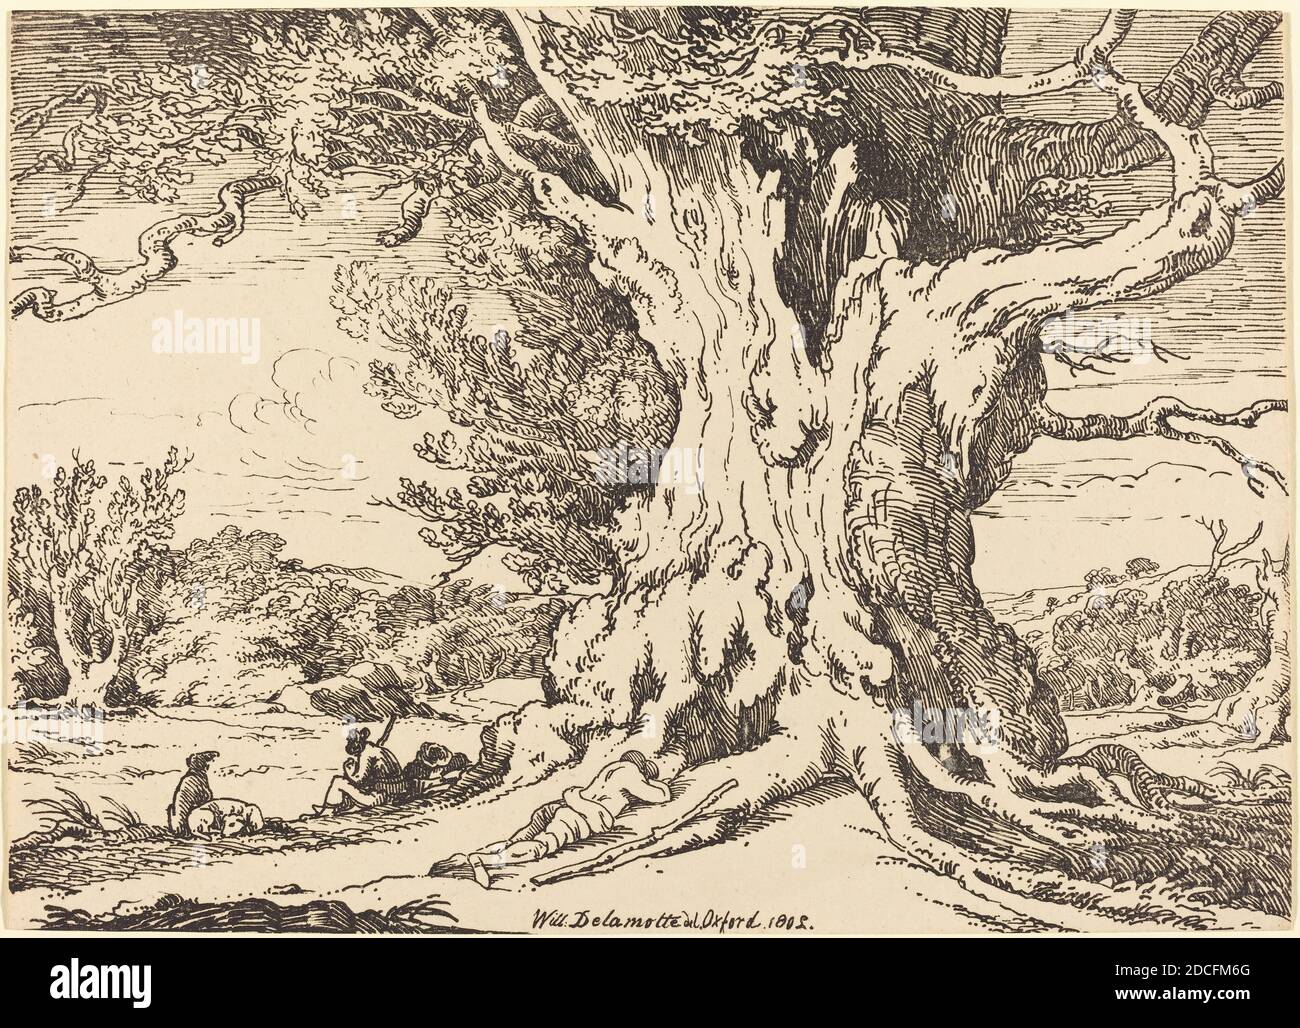 William Alfred Delamotte, (artista), britannico, 1775 - 1863, riposo, uomini e cani sotto un grande albero, esemplari di poliautografia, (serie), 1802, litografia a penna e a tusche Foto Stock